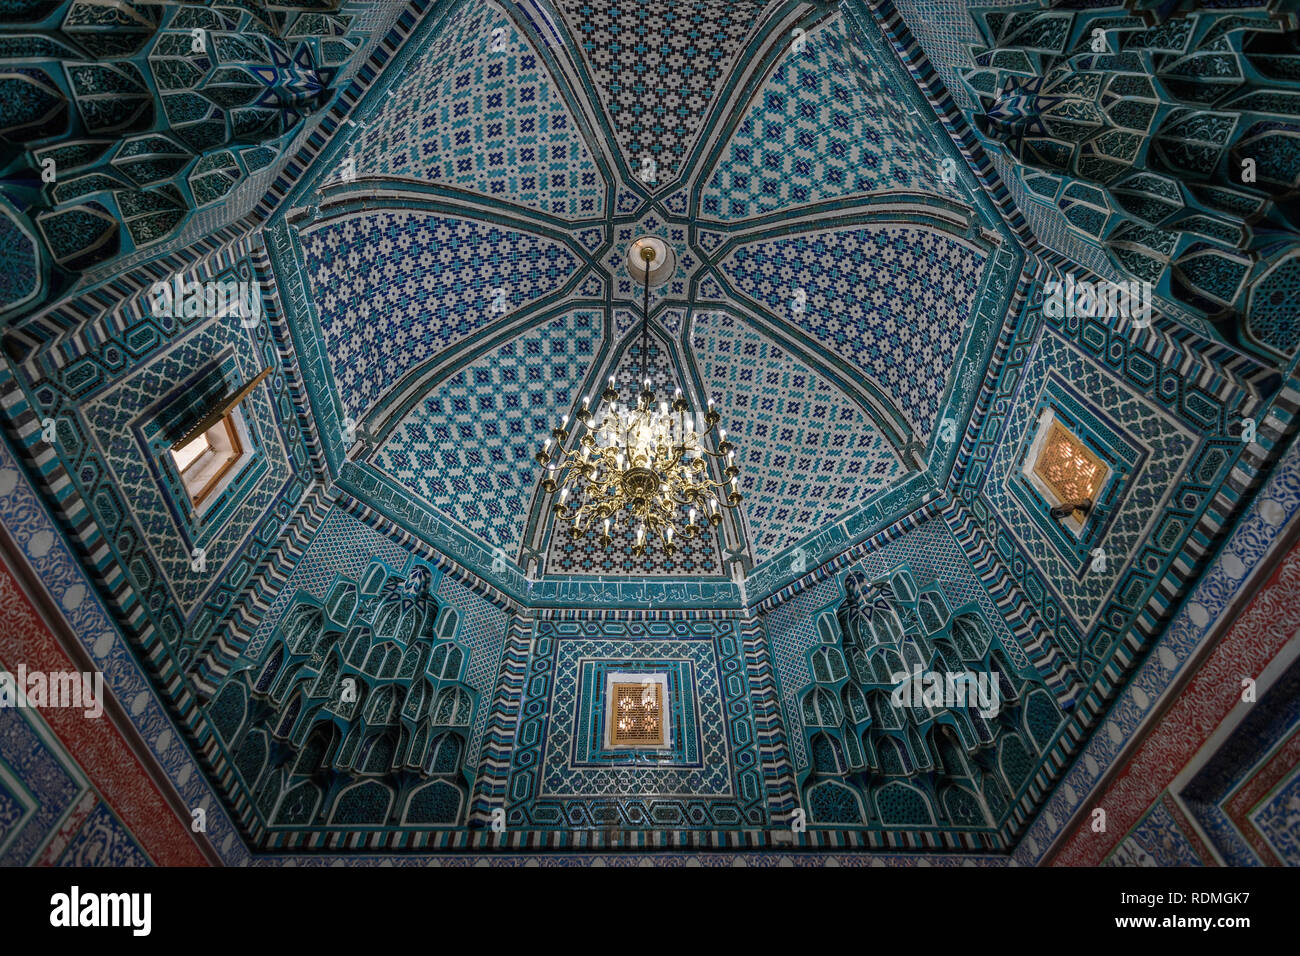 Interieur, Mosaik Muster in einer Kuppel einer Madrasa Gebäude in Samarkand. Stockfoto